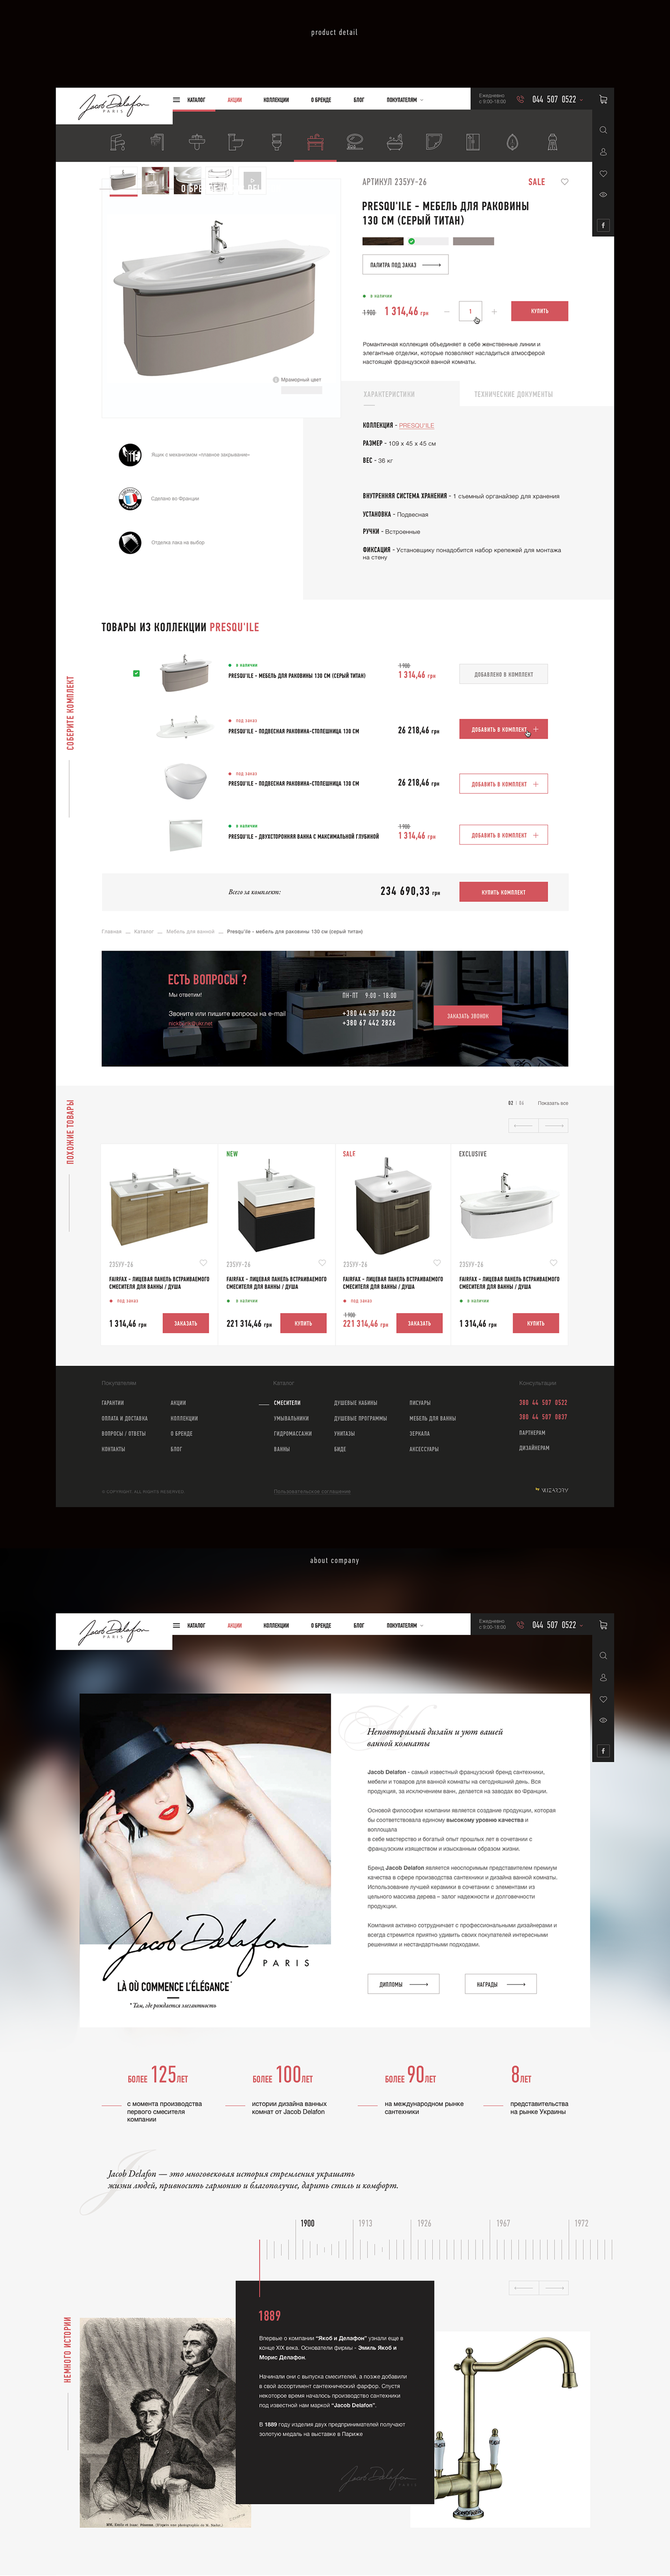 shop online store Ecommerce jacob delafon Web design